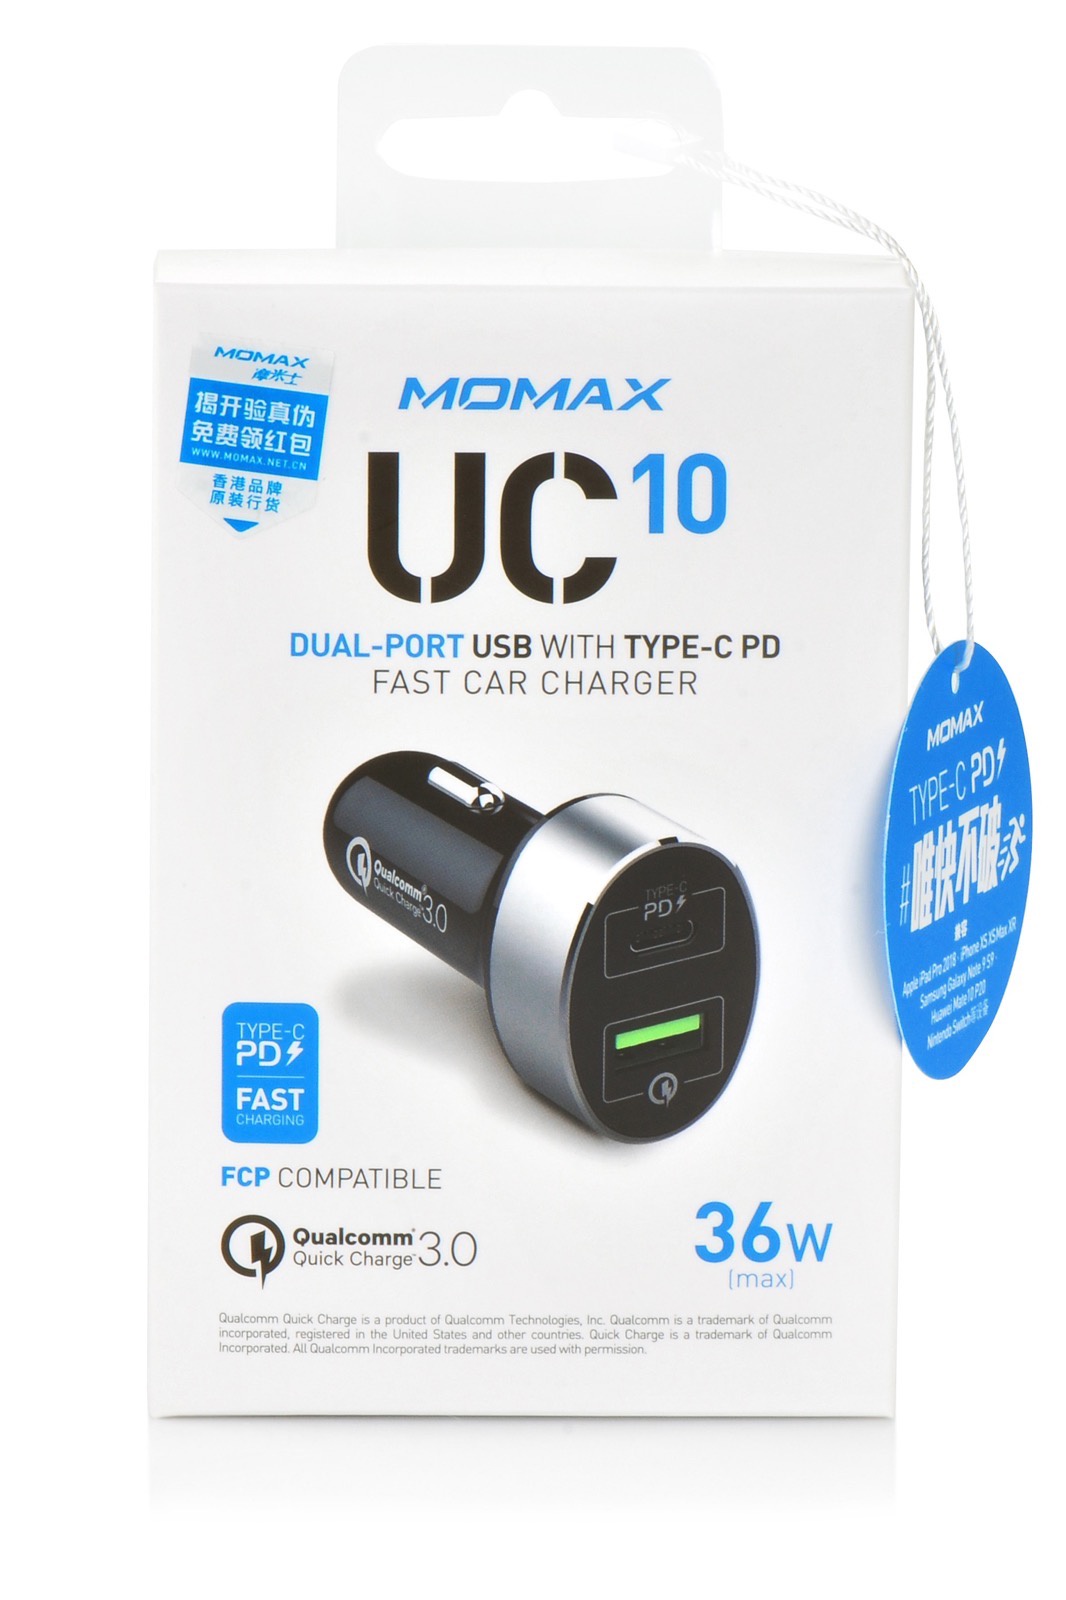 фото Авто зарядка Momax UC10 QC 3.0 fast + PD Type-C fast charge,907984,черный